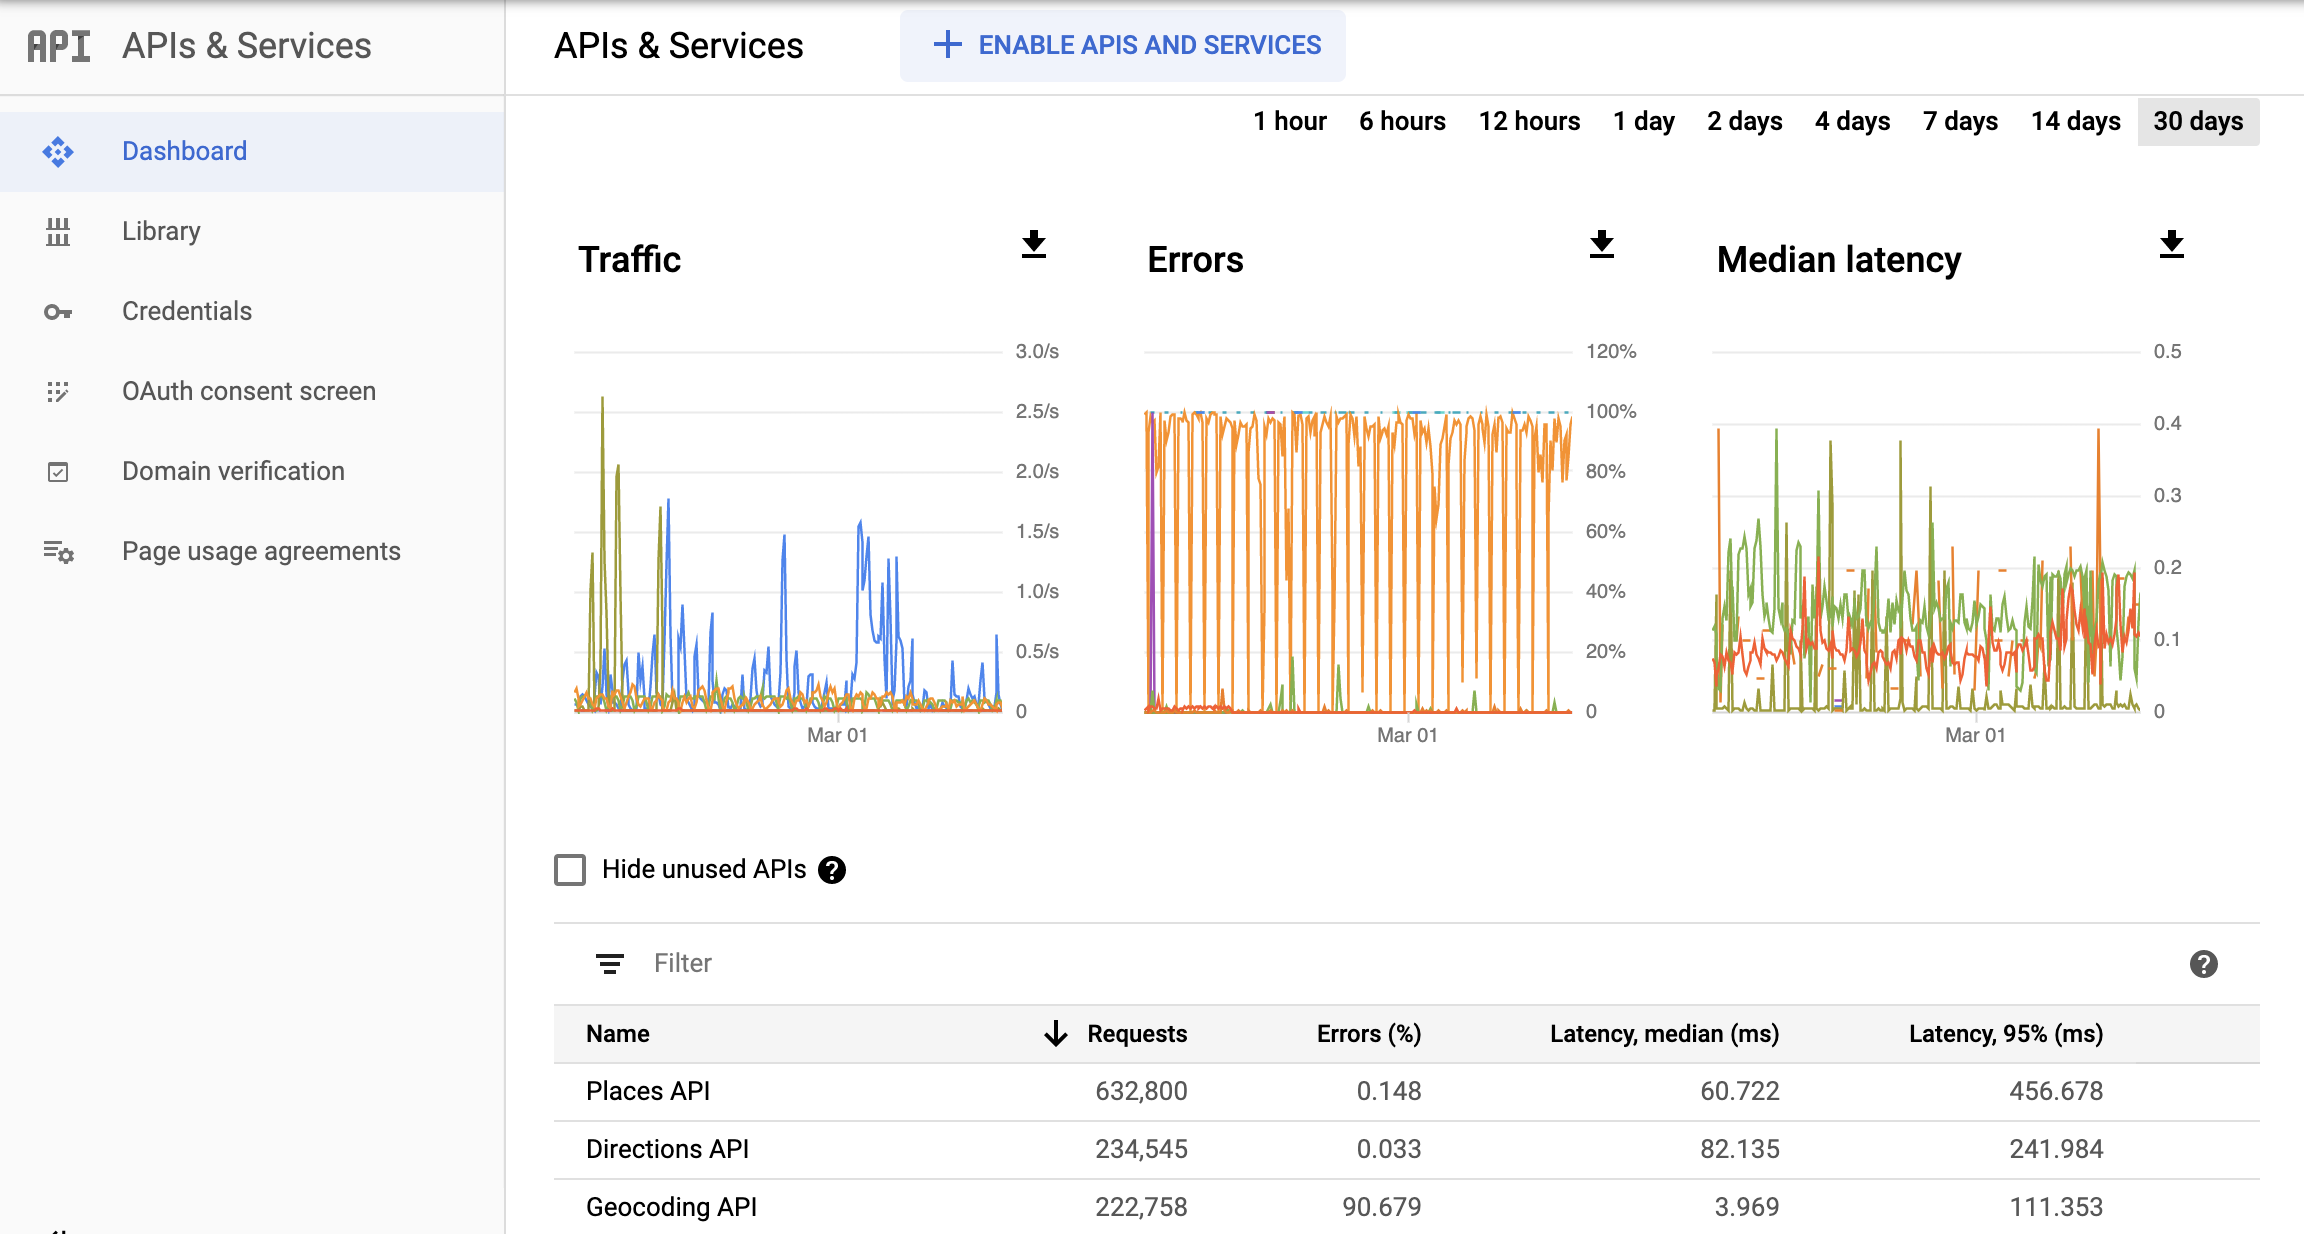 Ảnh chụp màn hình trang Monitoring API (API giám sát) trong Google Cloud Console, trong đó cho thấy trang tổng quan về báo cáo API và dịch vụ. Báo cáo này trình bày các biểu đồ riêng biệt về Lưu lượng truy cập, Lỗi và Độ trễ trung bình. Những biểu đồ này có thể hiển thị dữ liệu trong một giờ cho đến 30 ngày.